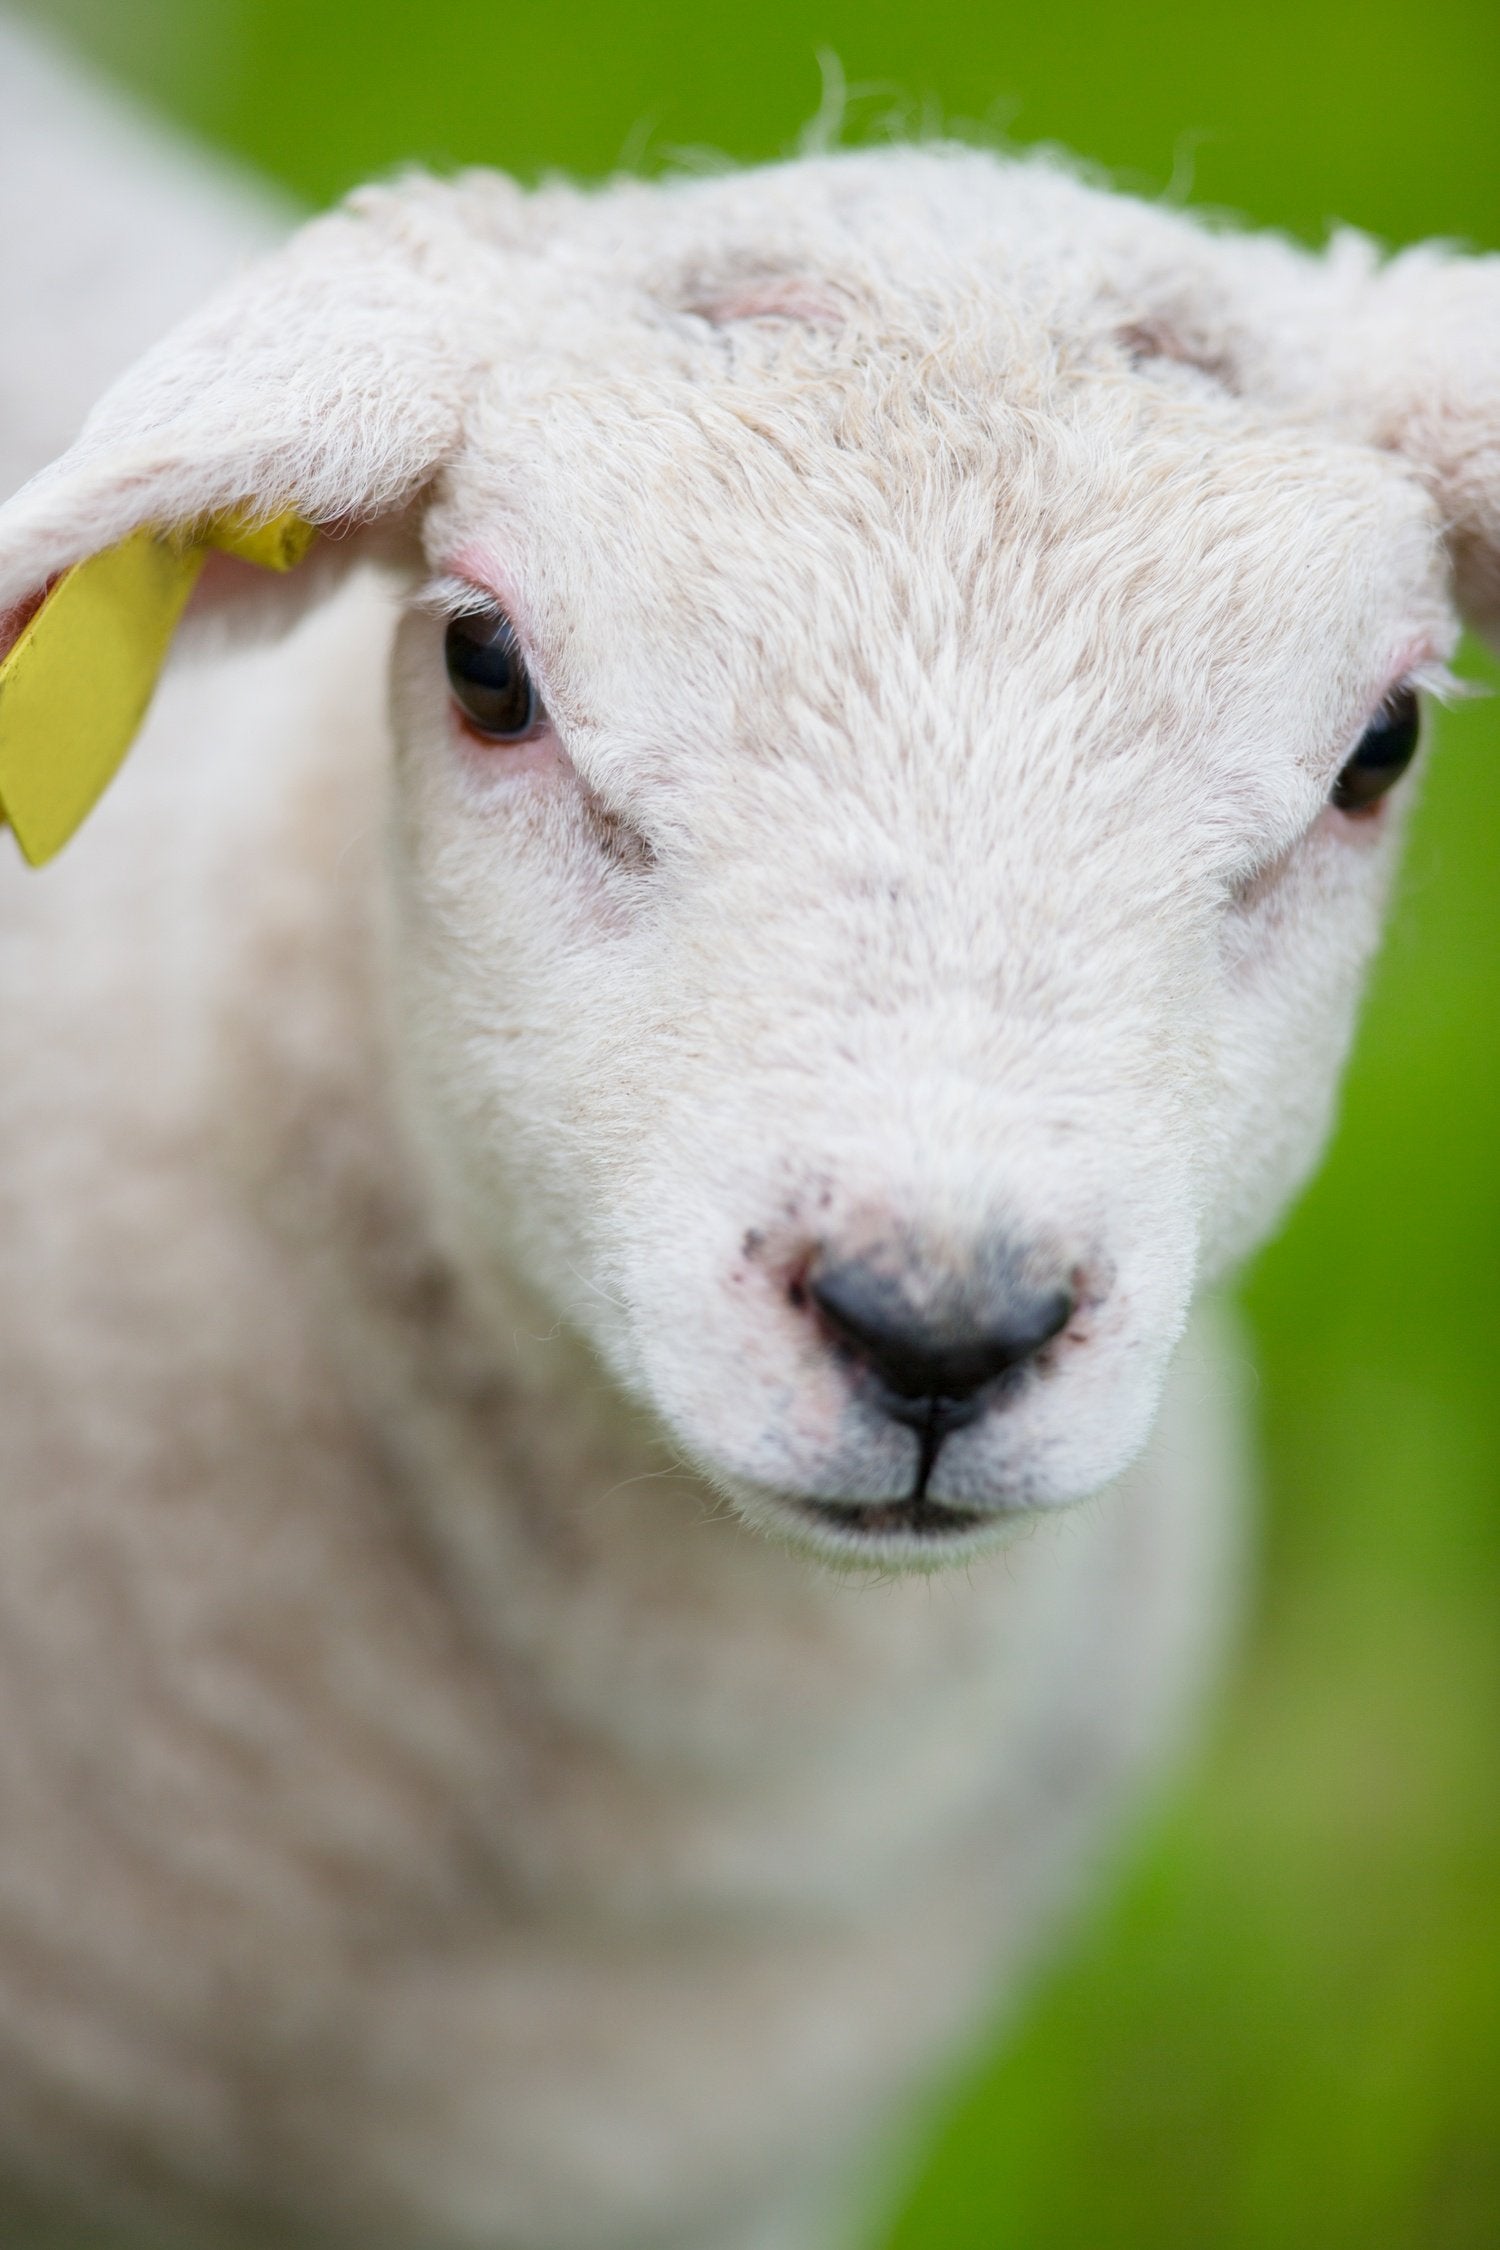 Sheeps and Lambs